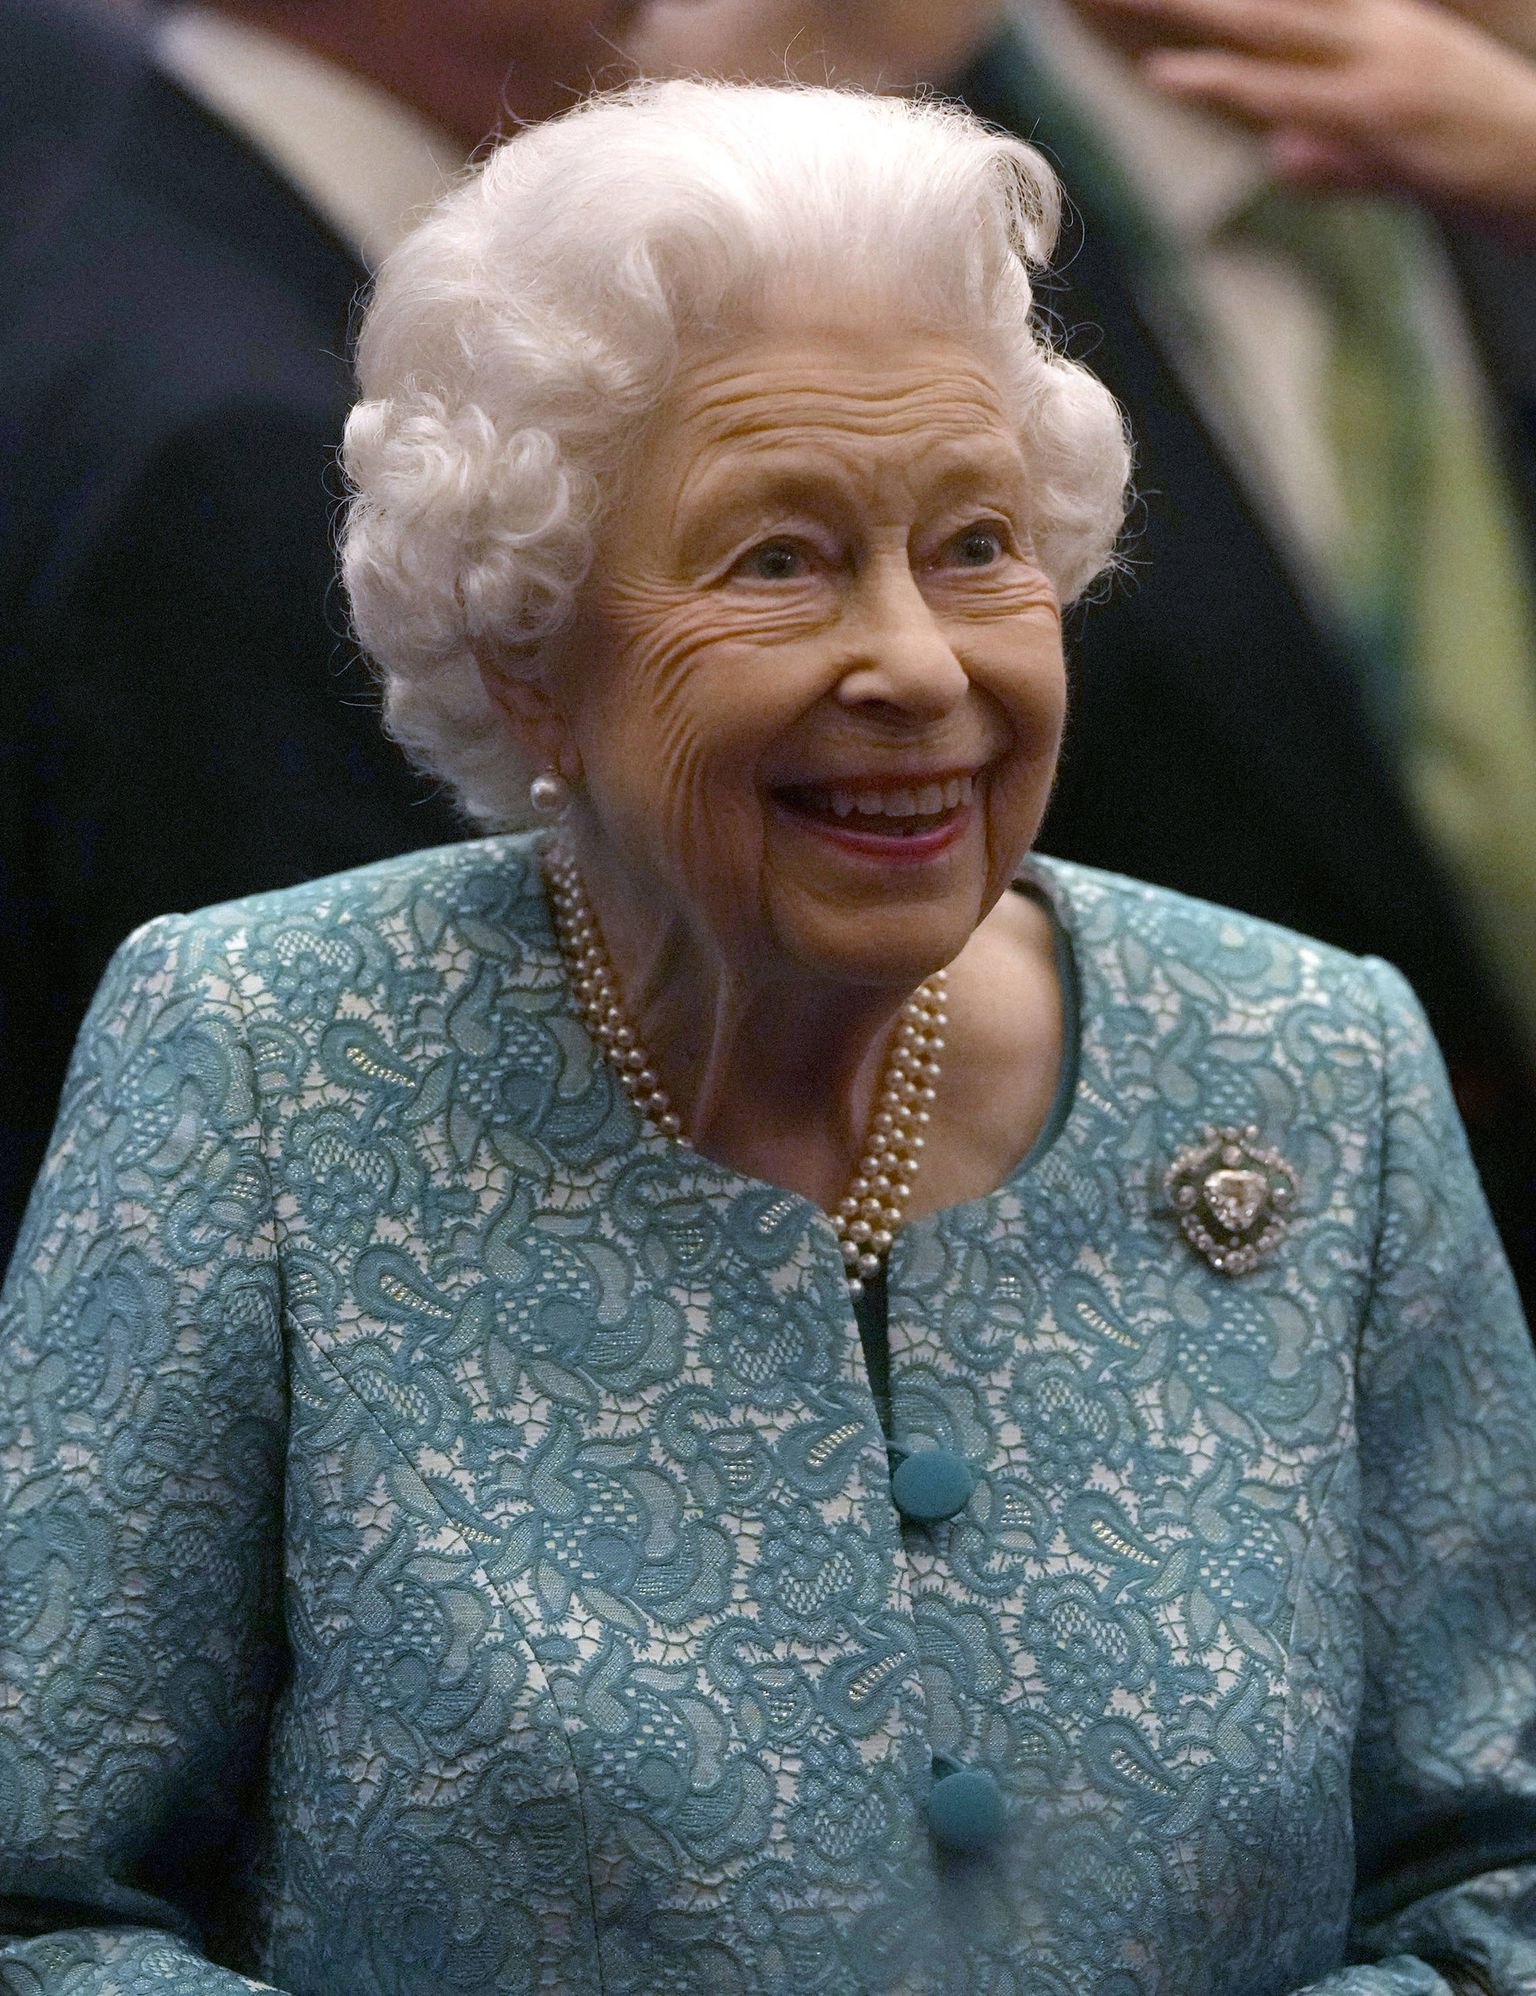 Briti kuninganna Elizabeth II 19. oktoobril 2021 Windsori lossis, kus toimus ärifoorum